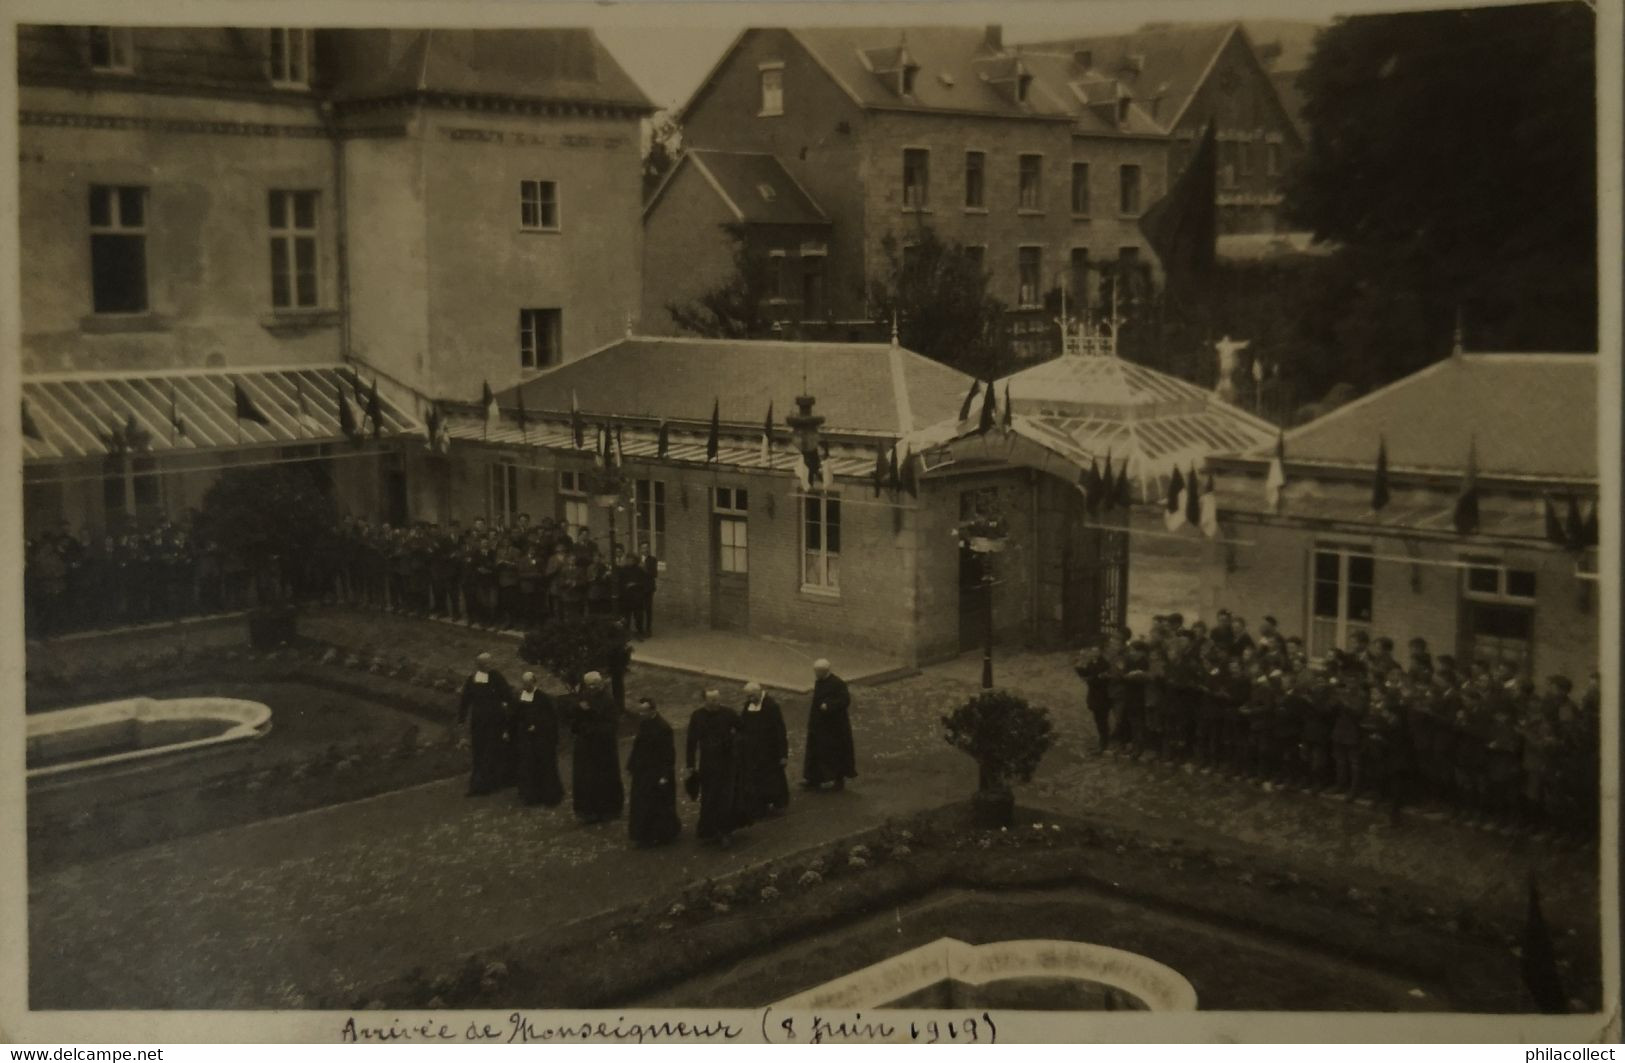 Carlsbourg (Paliseul) Carte Photo // Arrivee De Monseigneur 8 Juin 1919 // Send 1920 - Paliseul